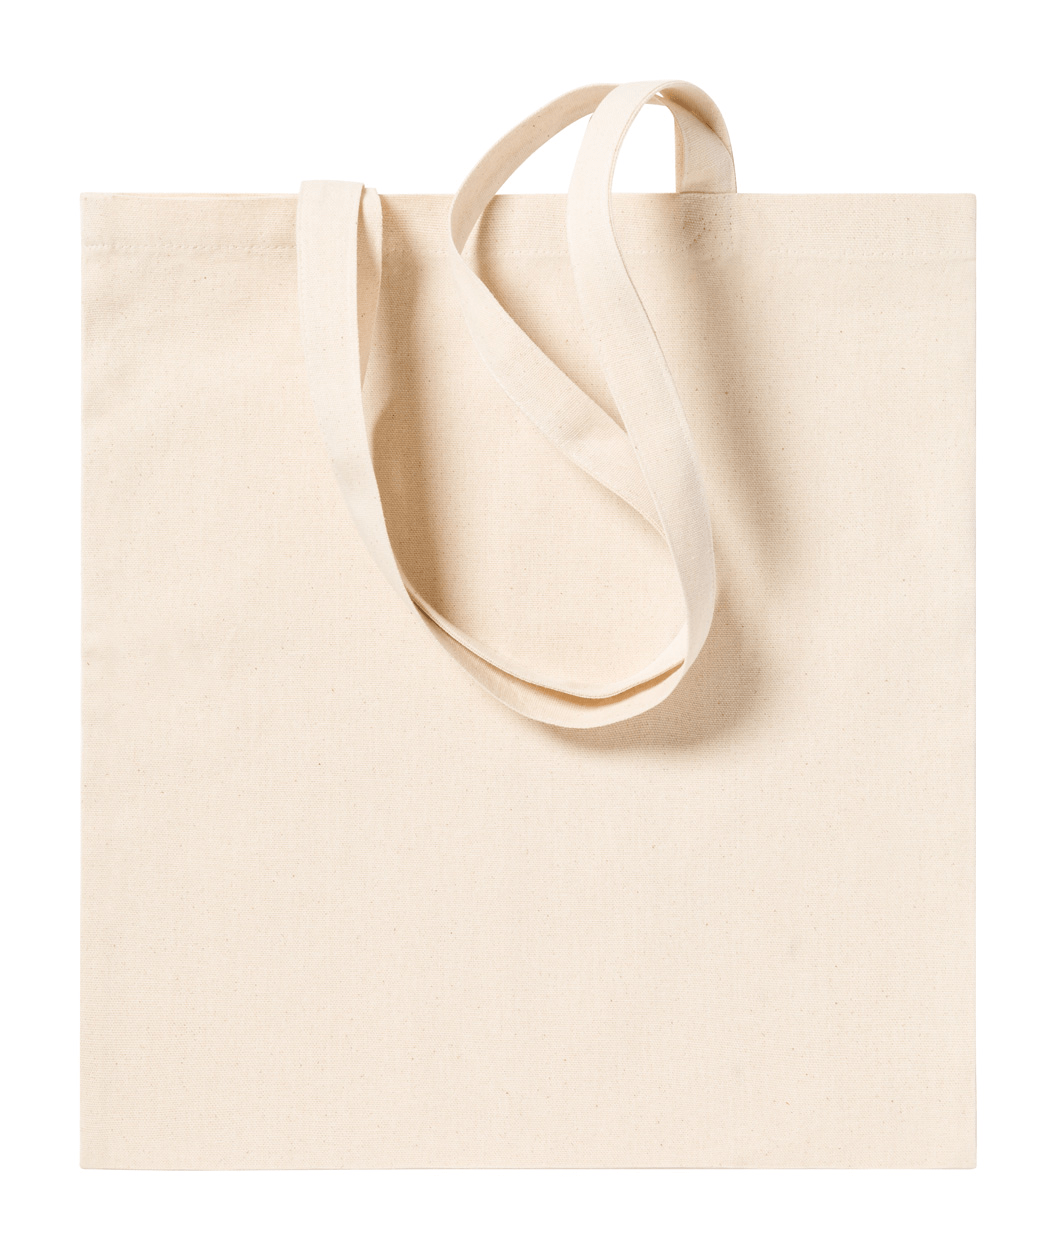 Hochwertige Tasche mit langen Henkeln für bequemes Tragen. Perfekt für den täglichen Gebrauch und vielseitig kombinierbar.